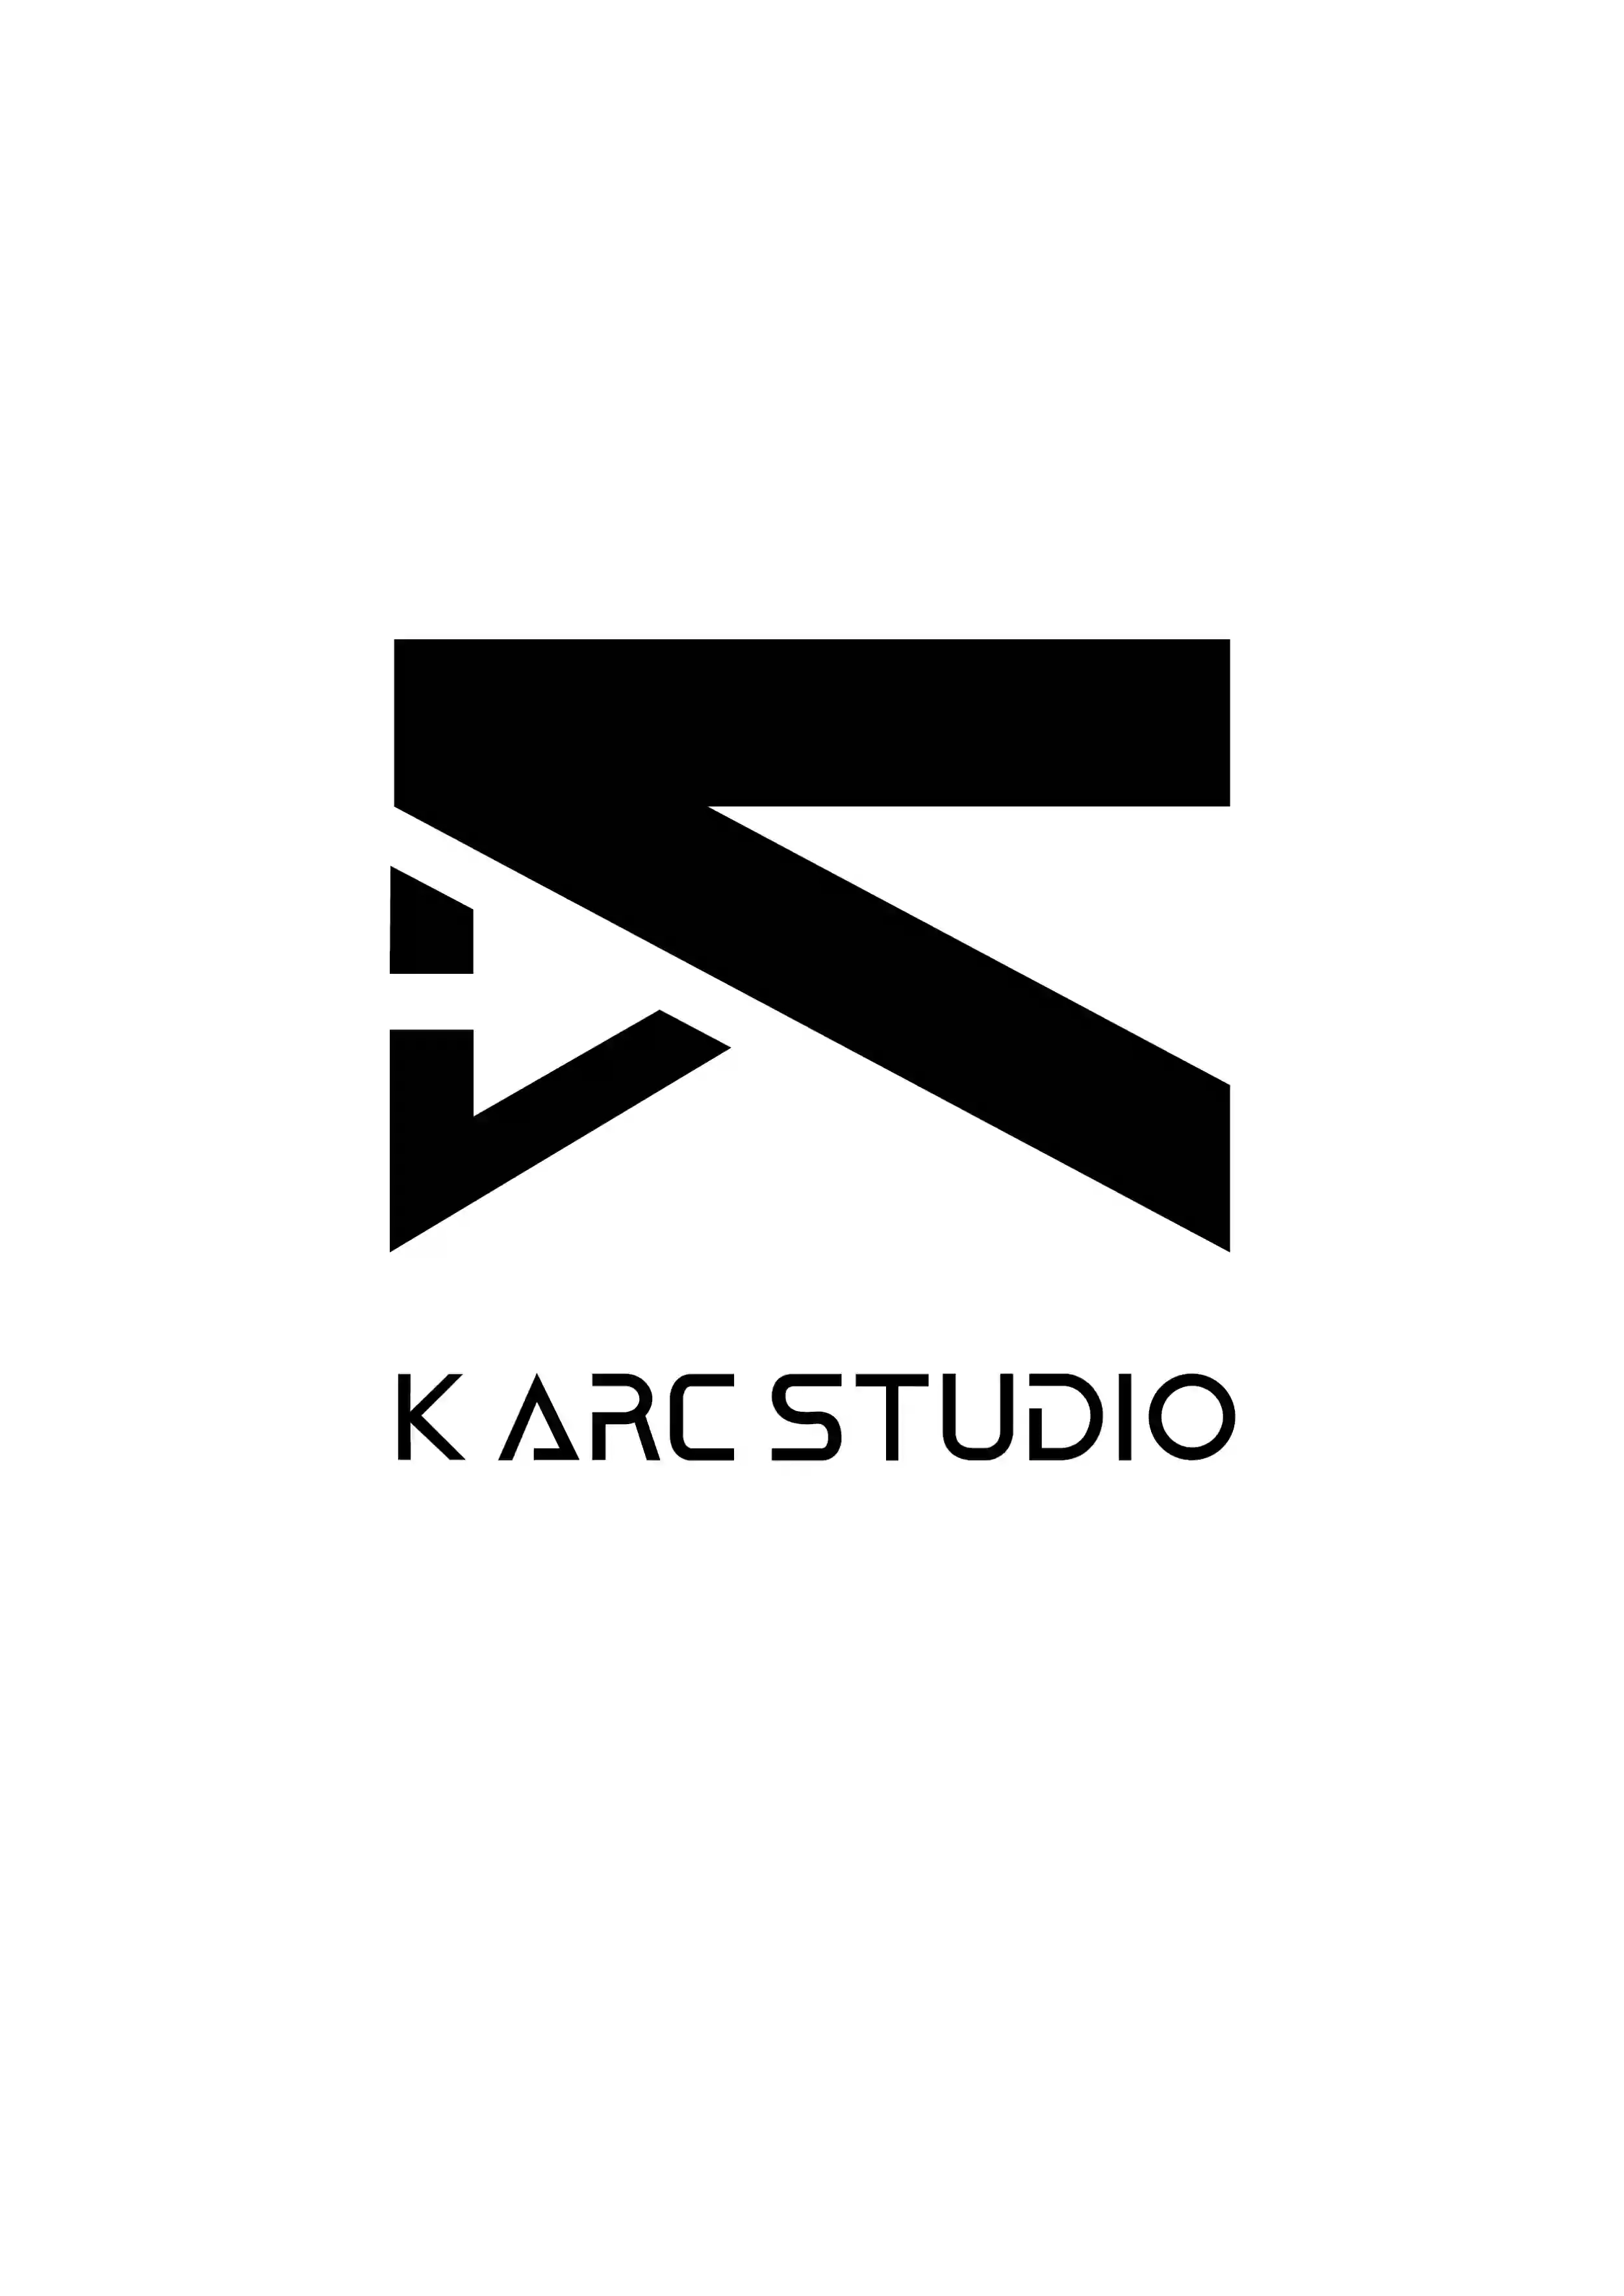 K ARC Studio